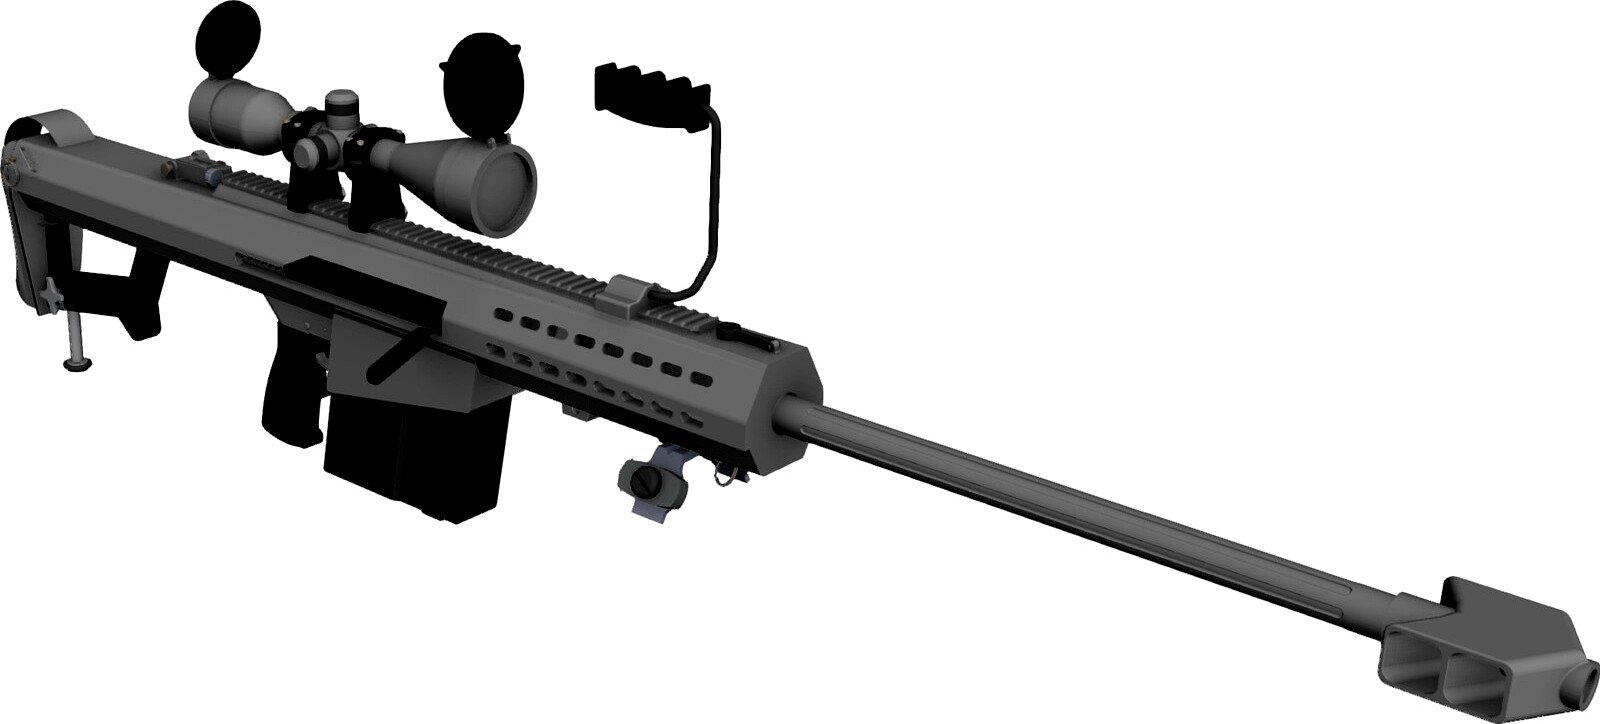 M107 Barrett 3D CAD Model